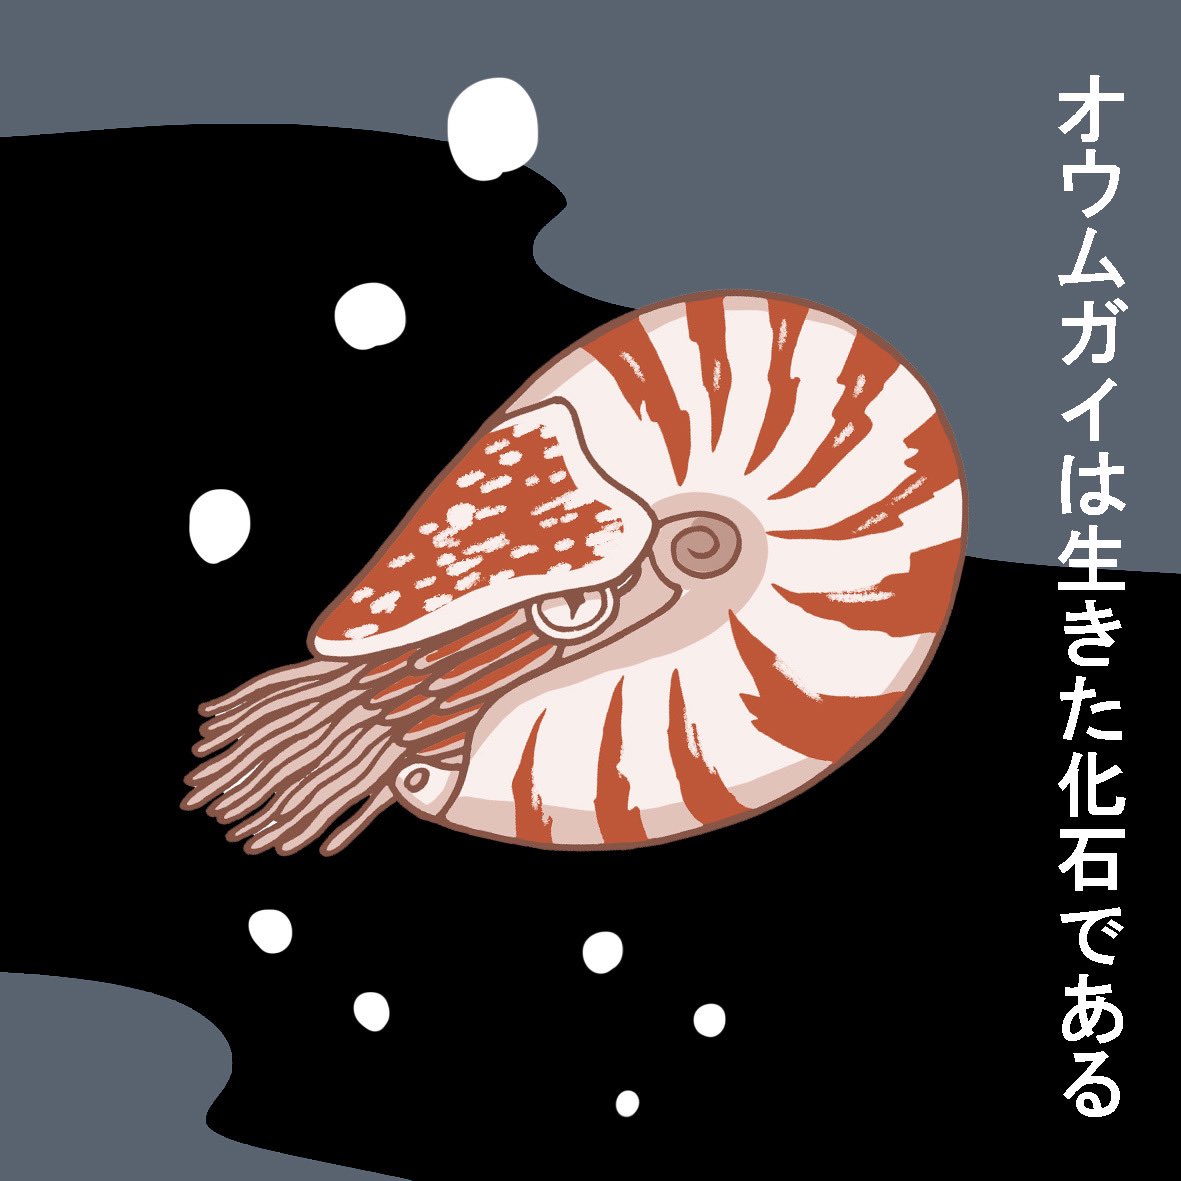 【第185話】オウムガイさんの生態#漫画 #絵本 #イラスト #めんだこ #オウムガイ #深海魚 